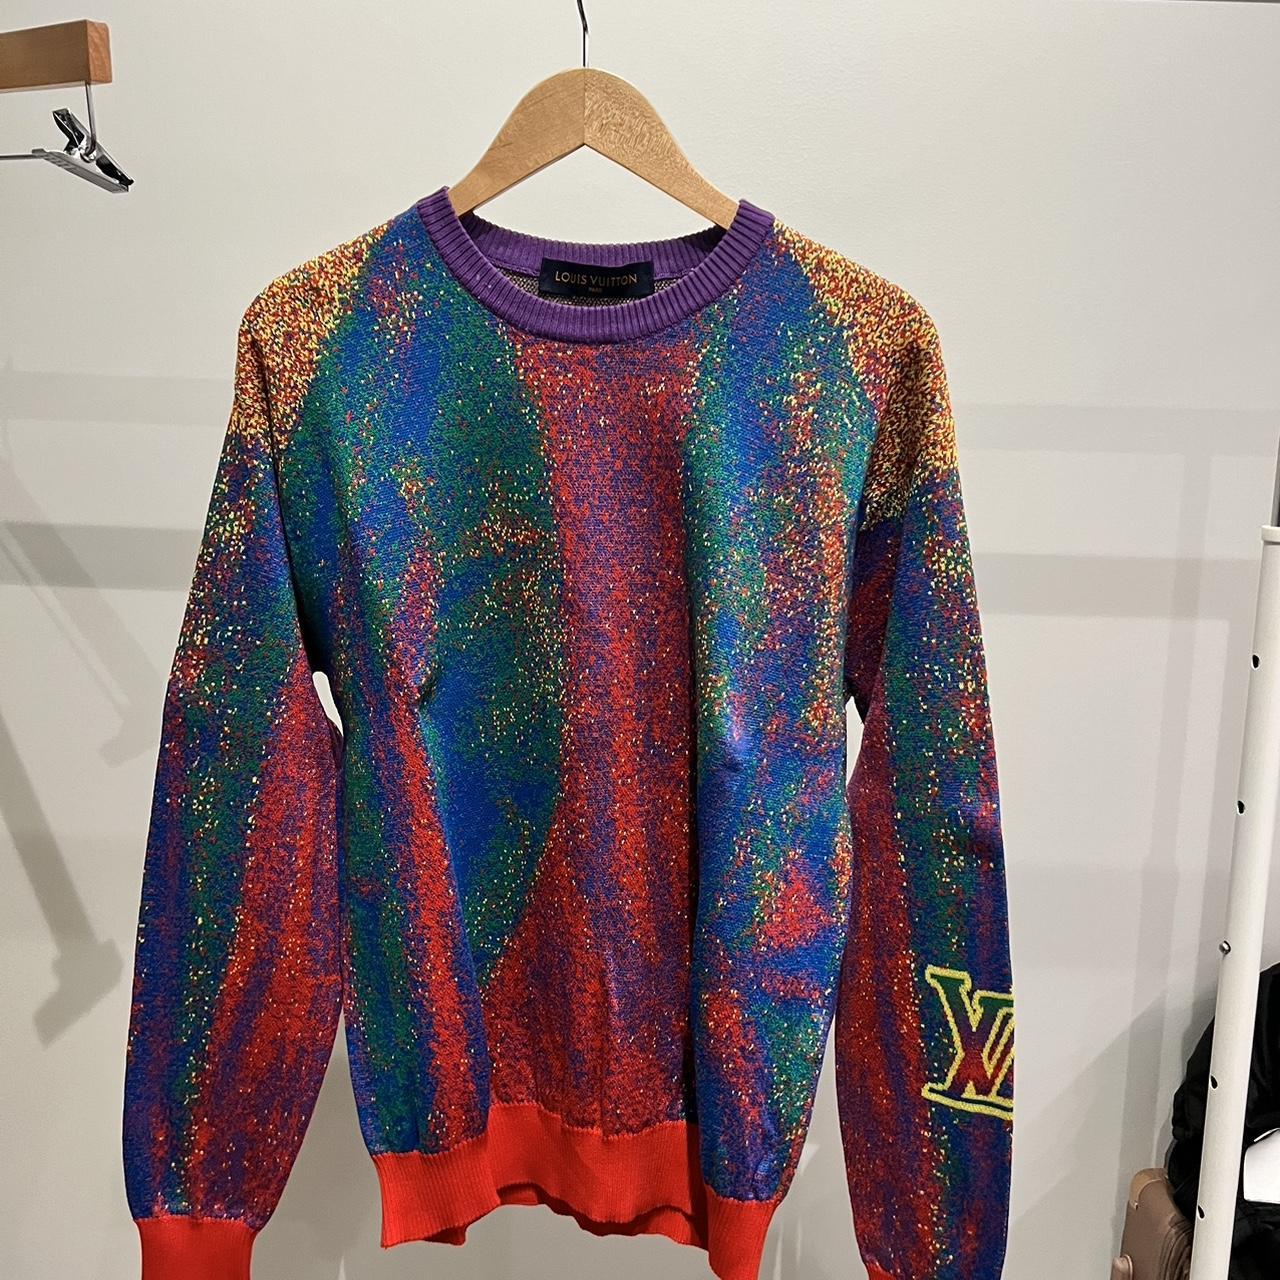 Louie Vuitton multi-colored sweater #LV #sweater - Depop